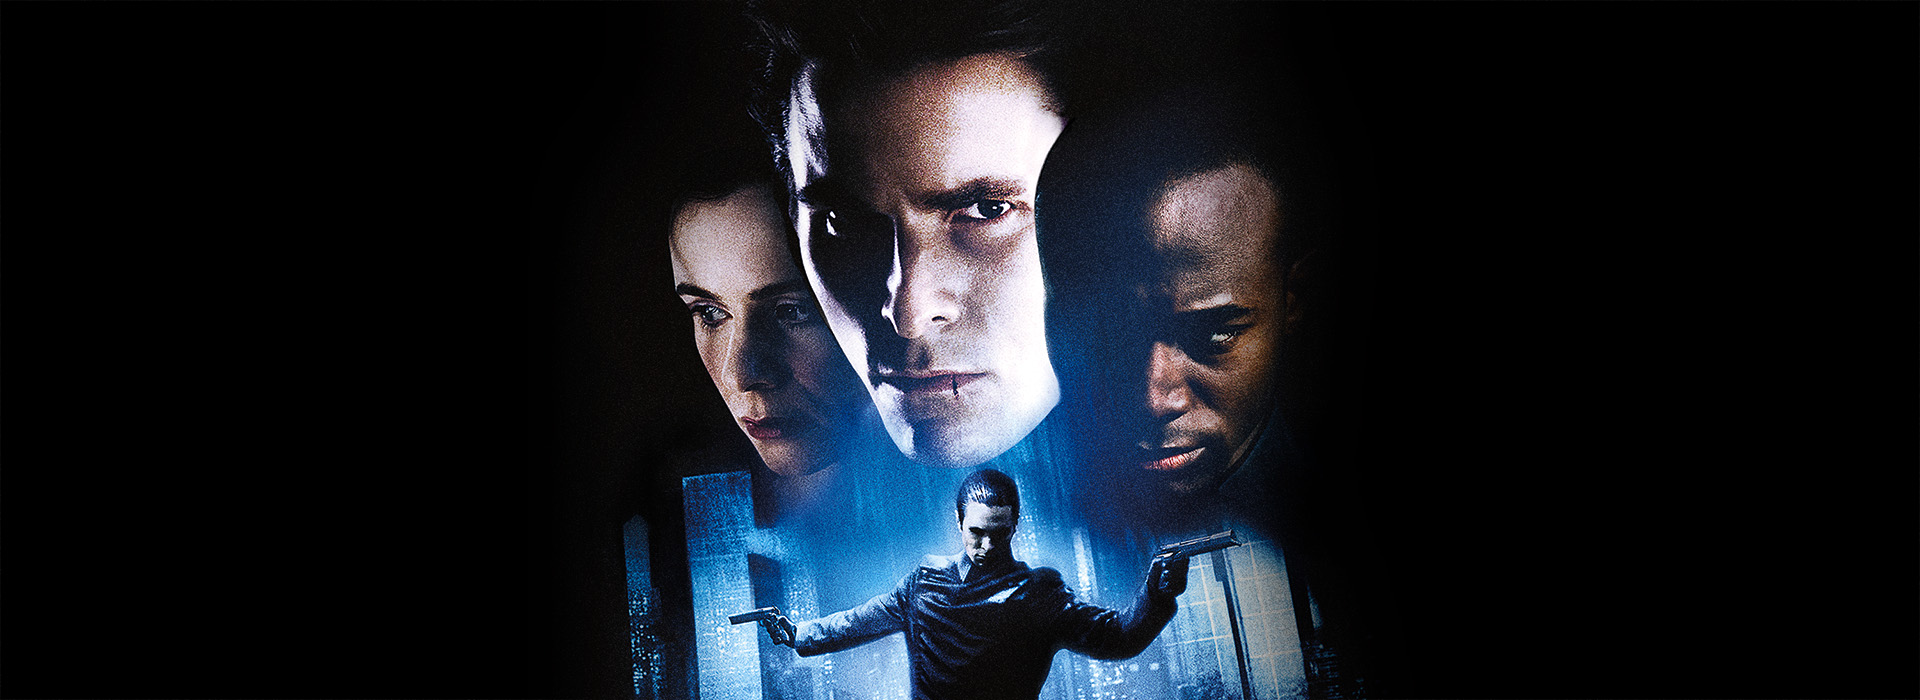 Movie poster Equilibrium